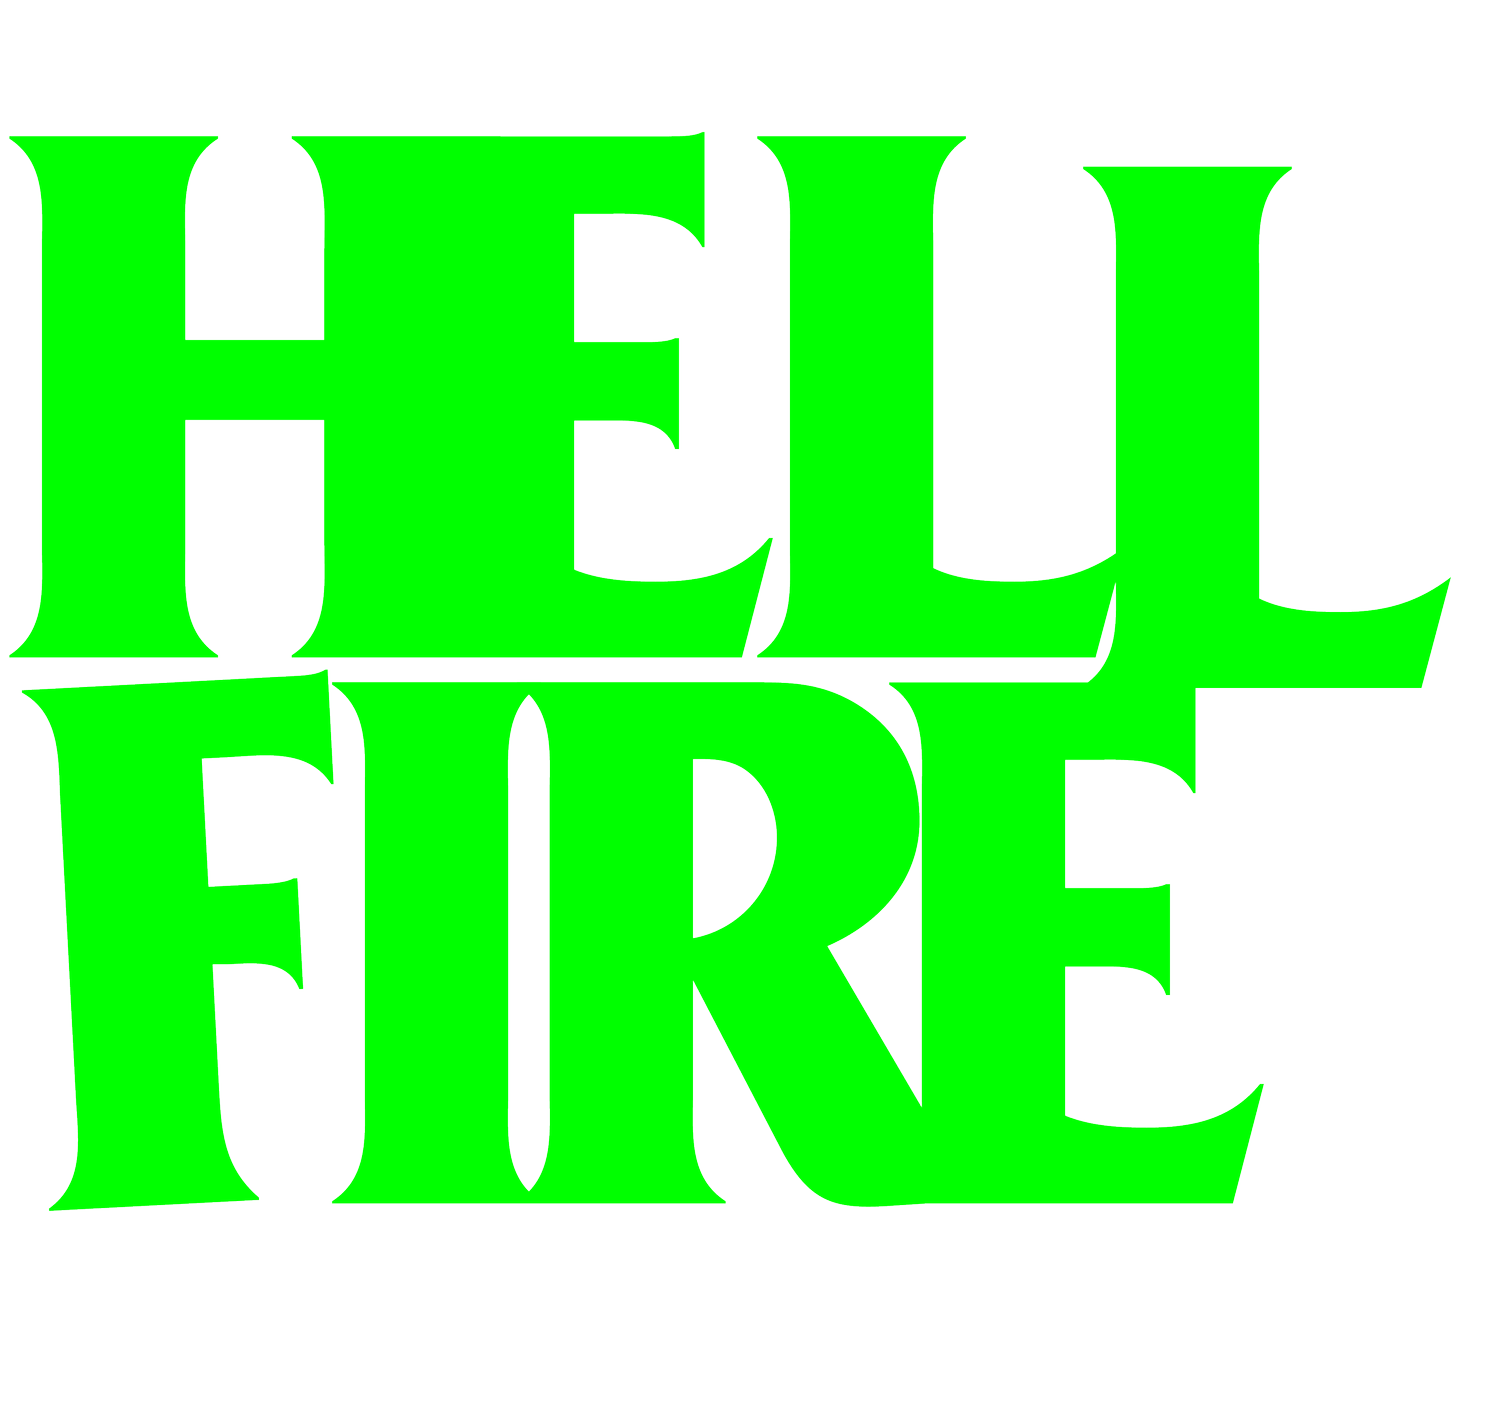 Hellfire - Video production company. London